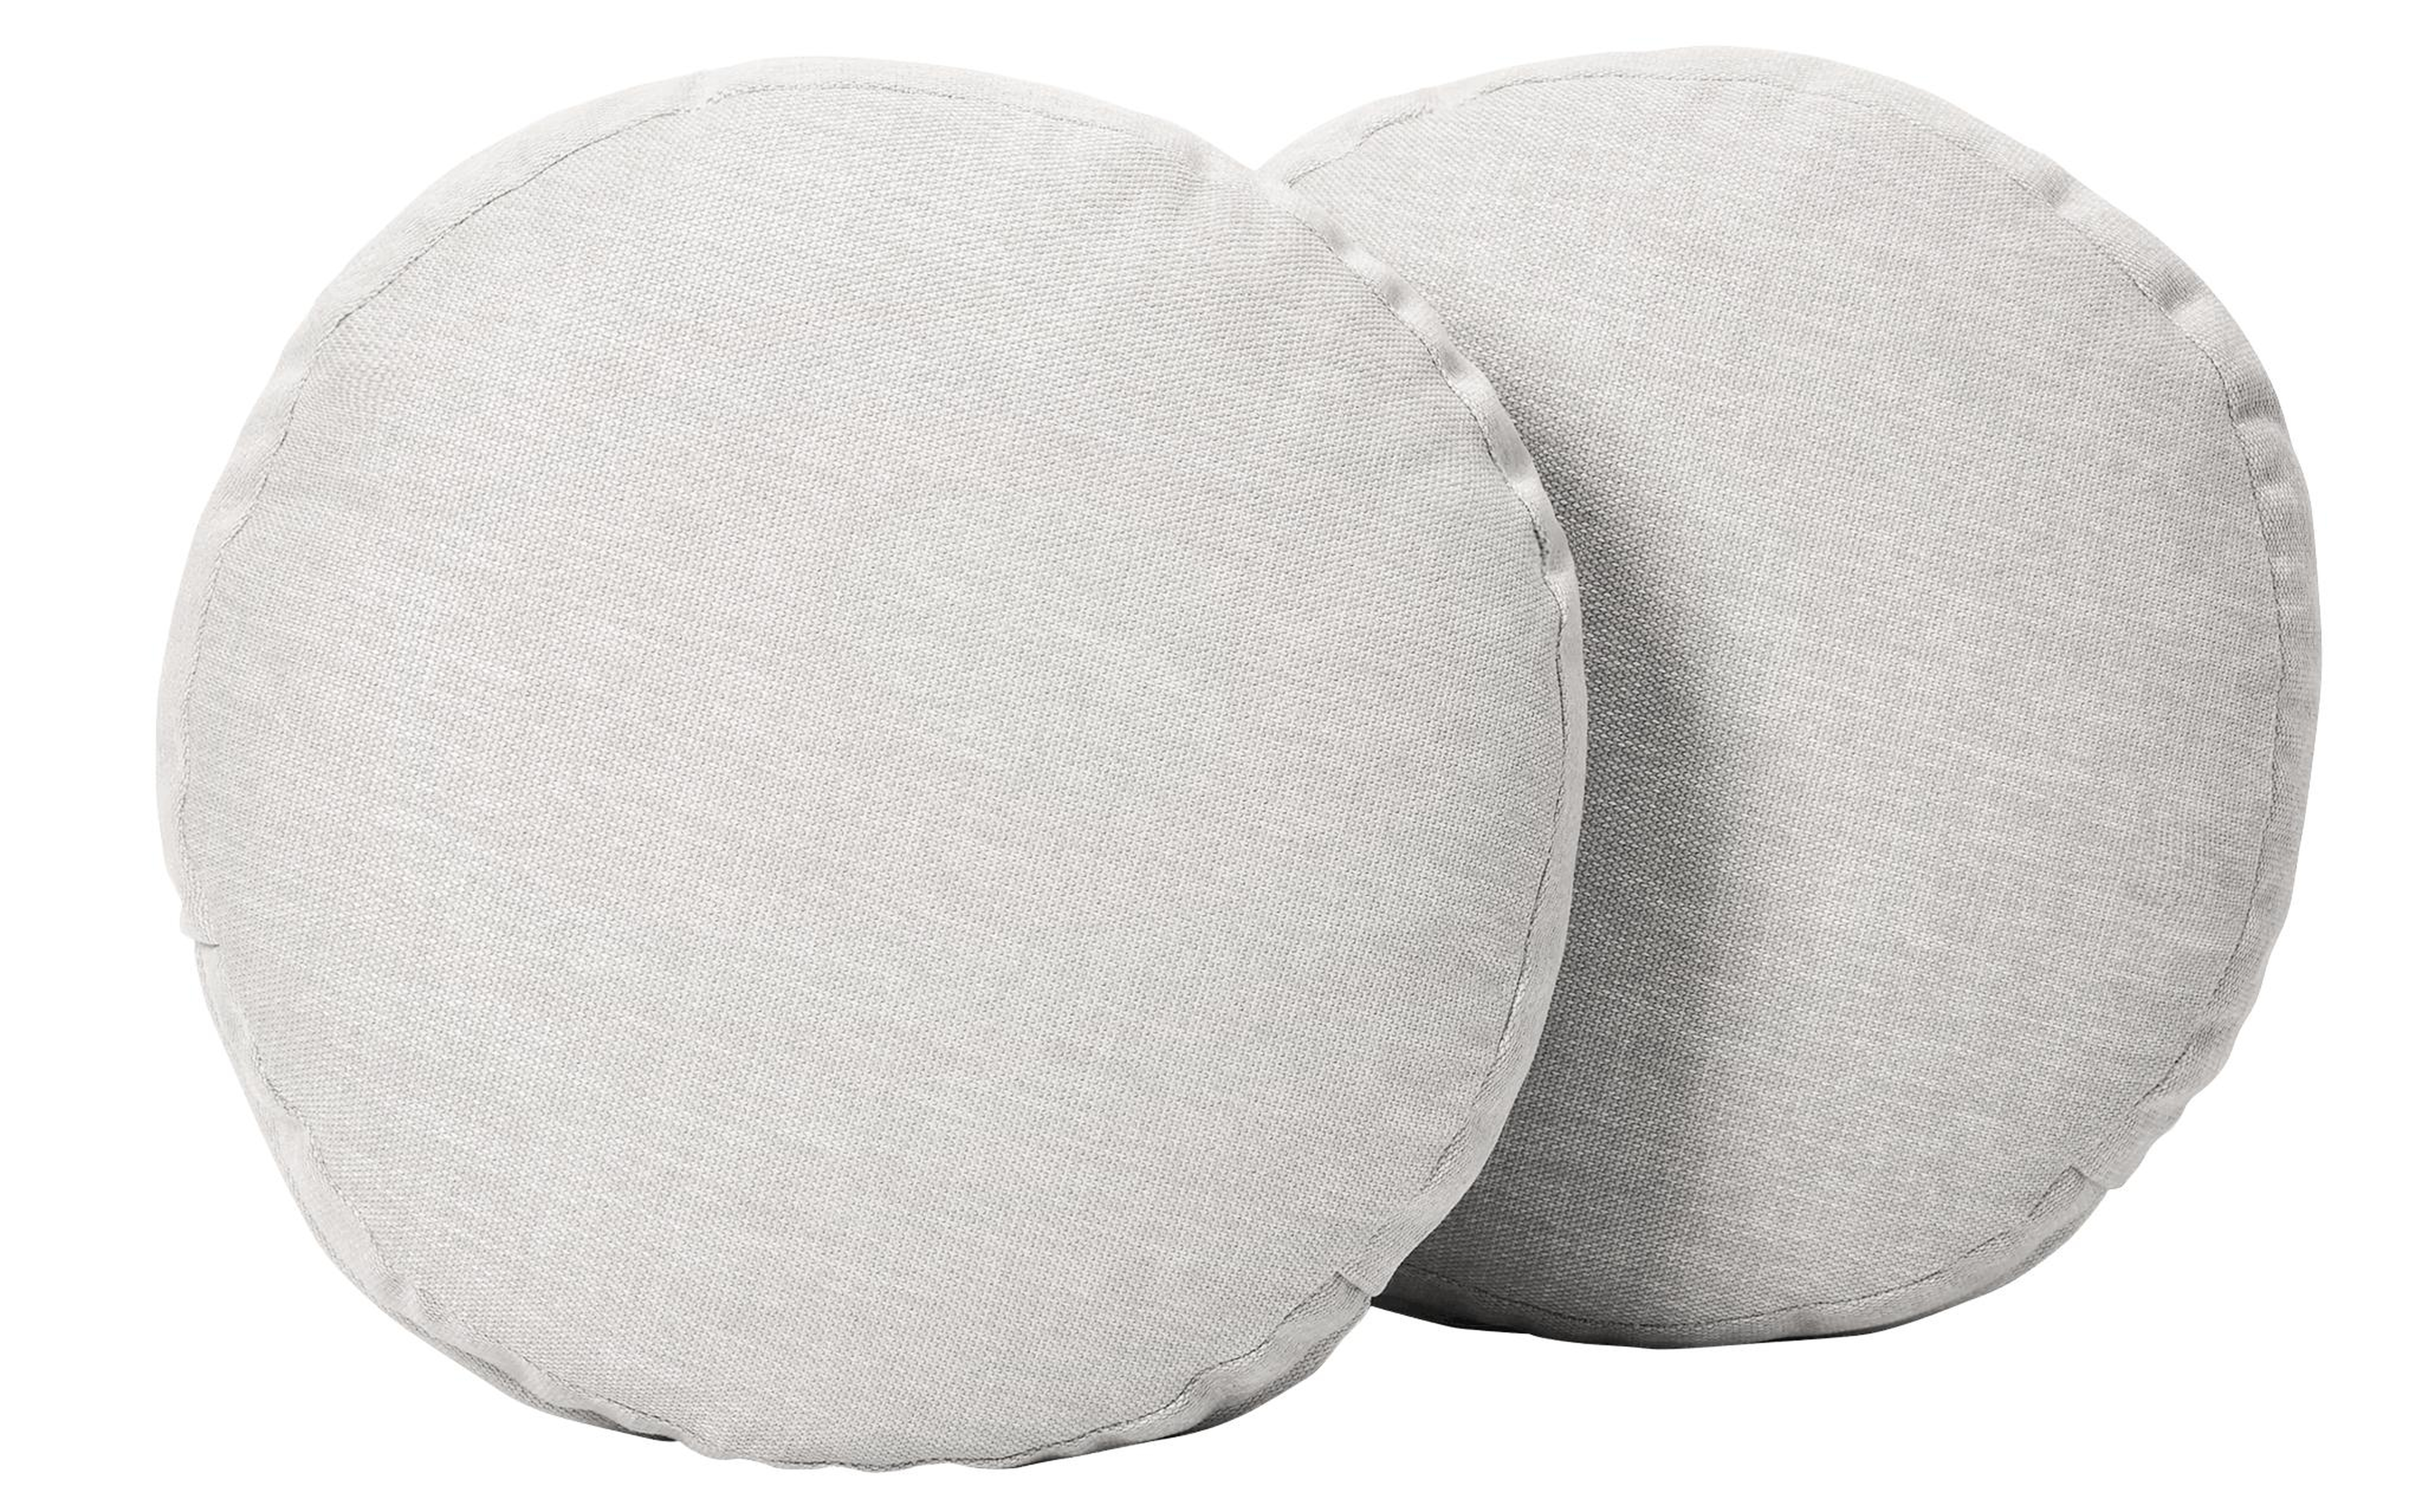 White Decorative Mid Century Modern Round Pillows 16 x 16 (Set of 2) - Tussah Blizzard - Joybird